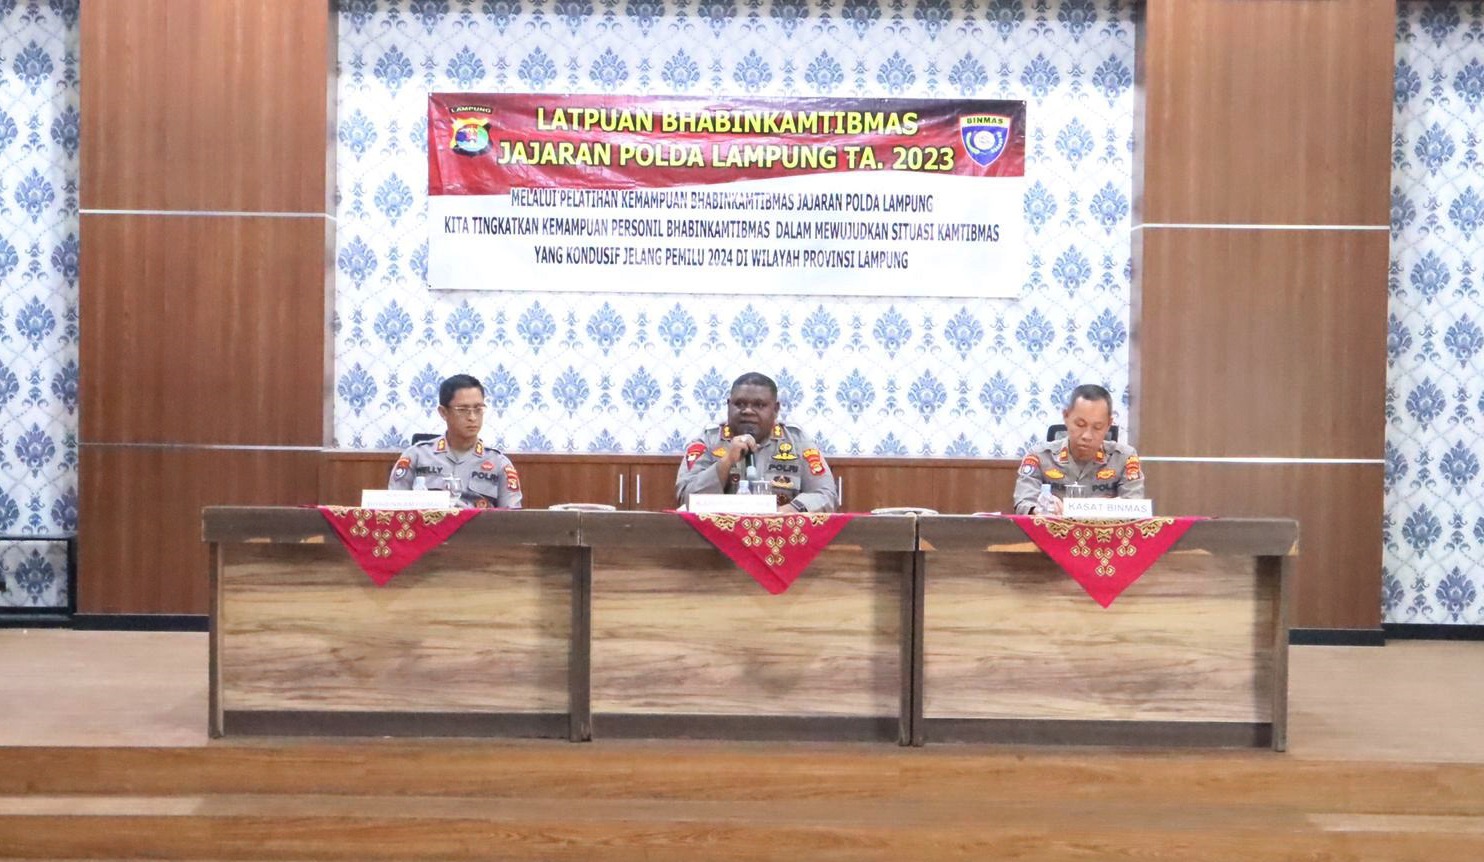 Ditbinmas Polda Lampung Gelar Latpuan Kepada 78 Personel Bhabinkamtibmas Polres Tulang Bawang